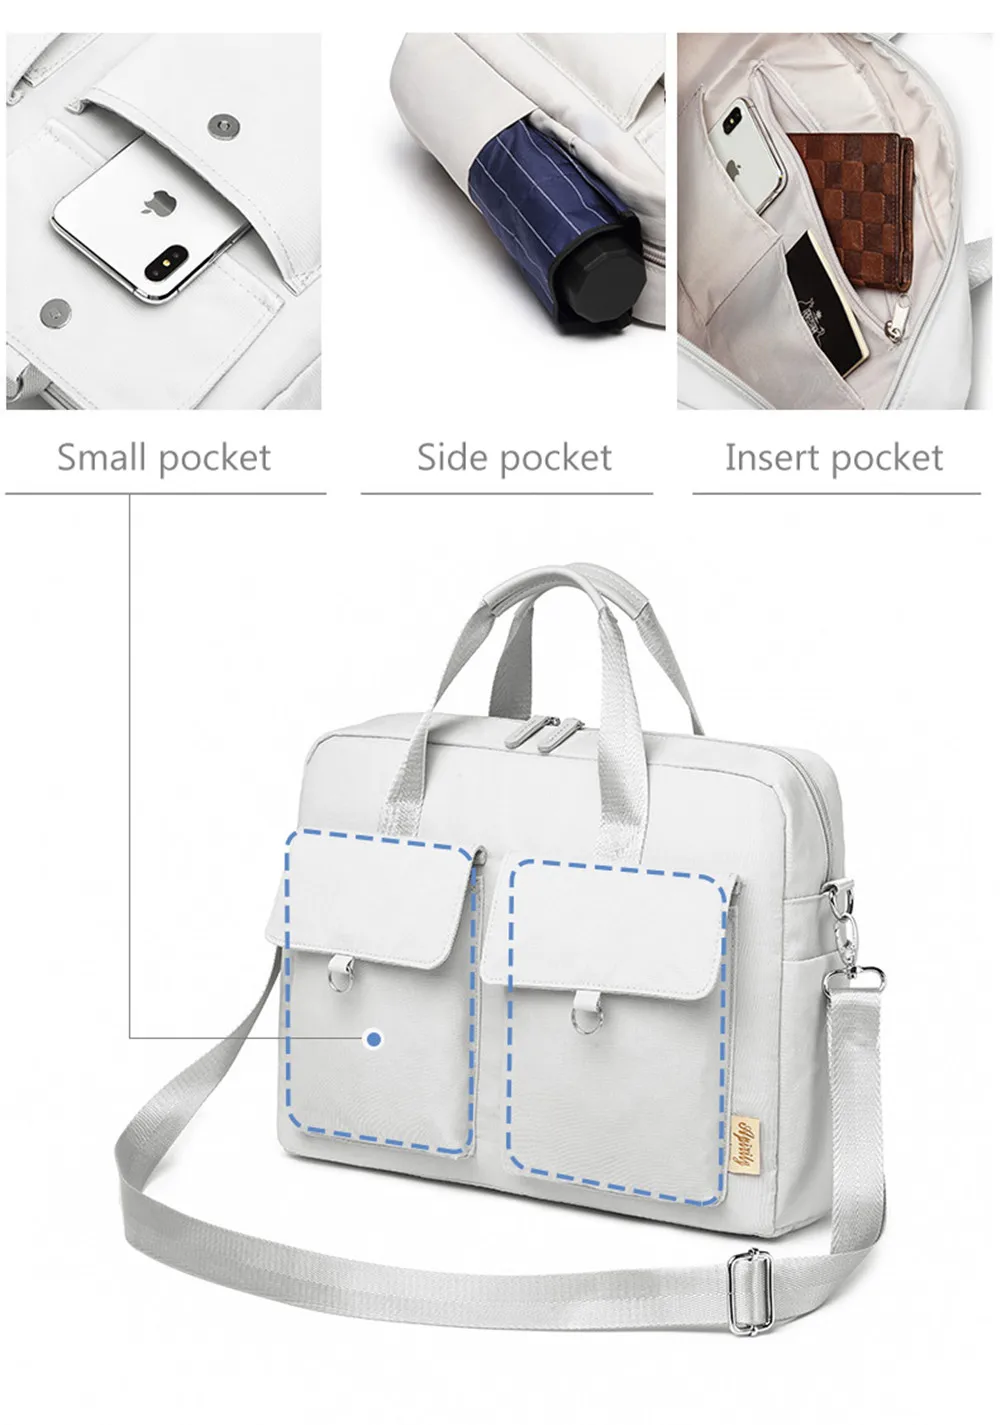 15,6 дюймов дорожная женская сумка для ноутбука водонепроницаемая сумка для ноутбука для Macbook Air Pro 11 12 13 15 lenovo hp портфель для ноутбука